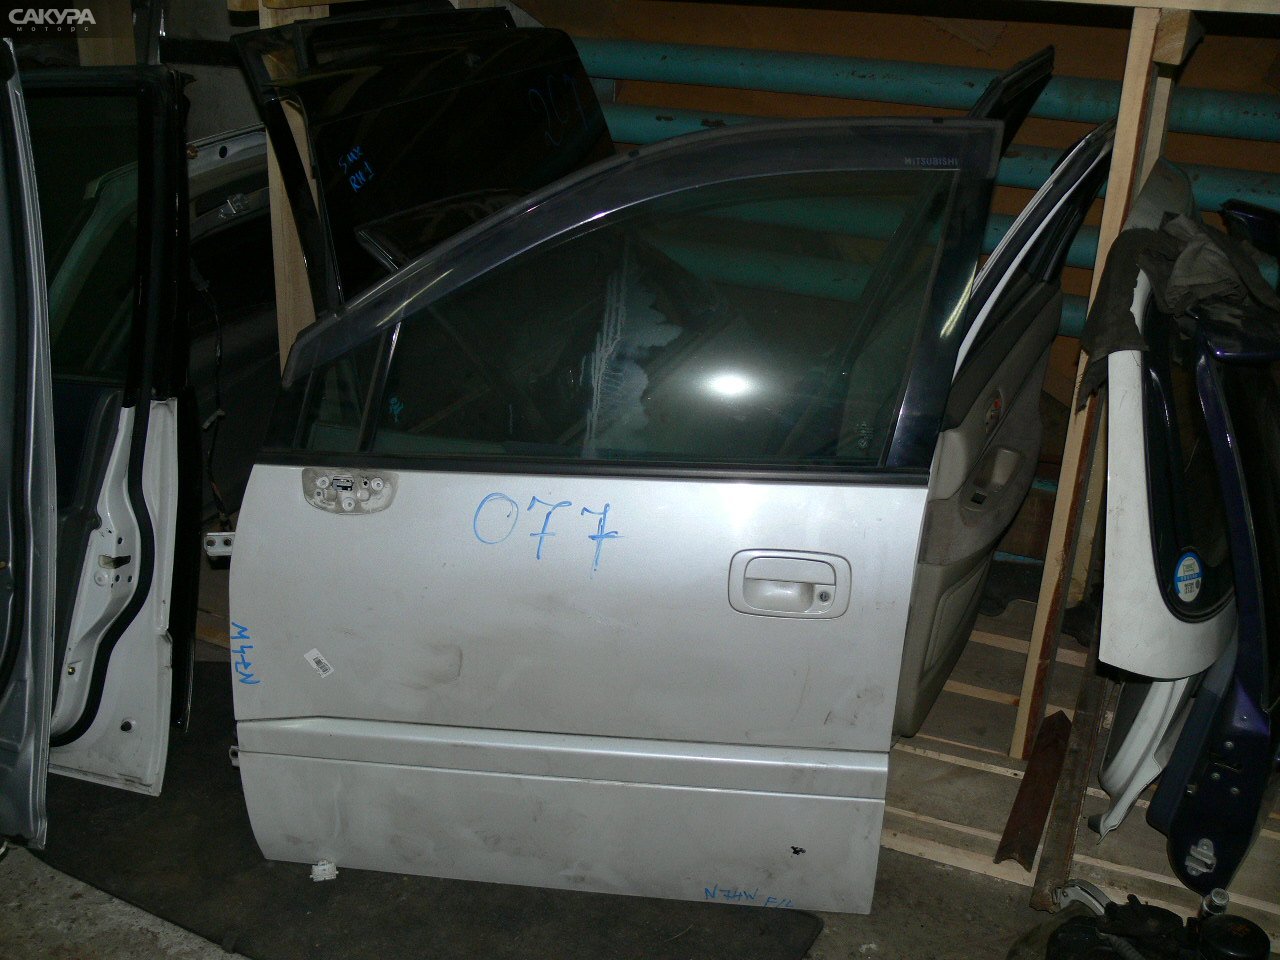 Дверь боковая передняя левая Mitsubishi RVR N74WG: купить в Сакура Иркутск.